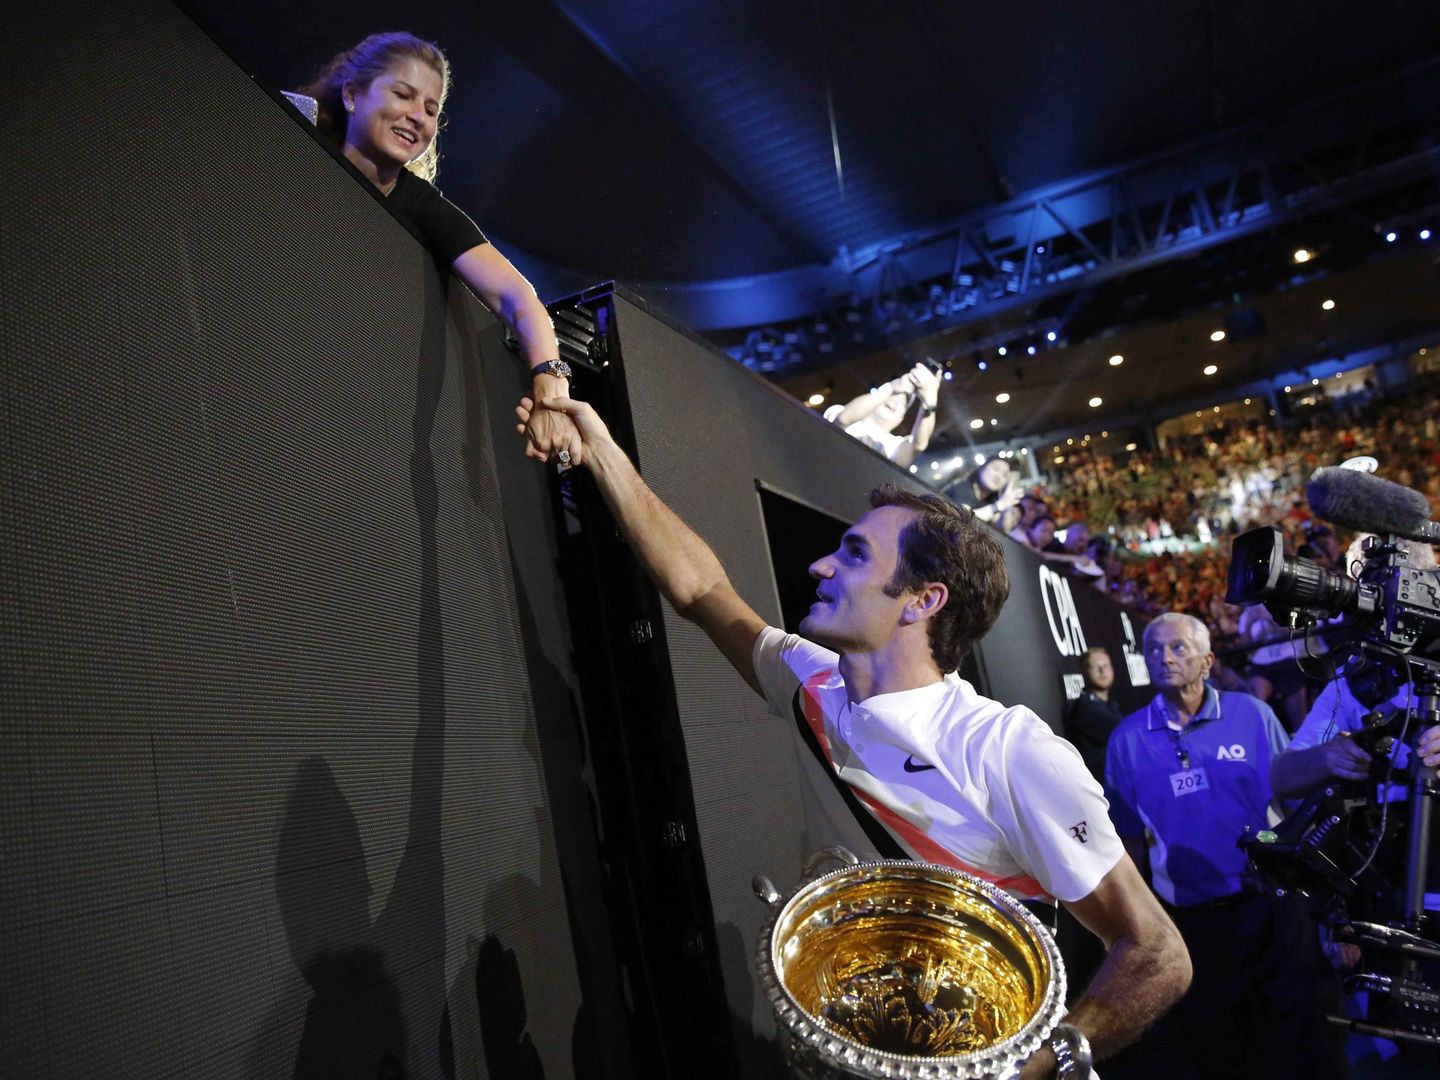 Roger Federer agradeció el apoyo de su mujer, Mirka. Sin ella, dijo, nada de lo que hace sería posible. (Reuters)